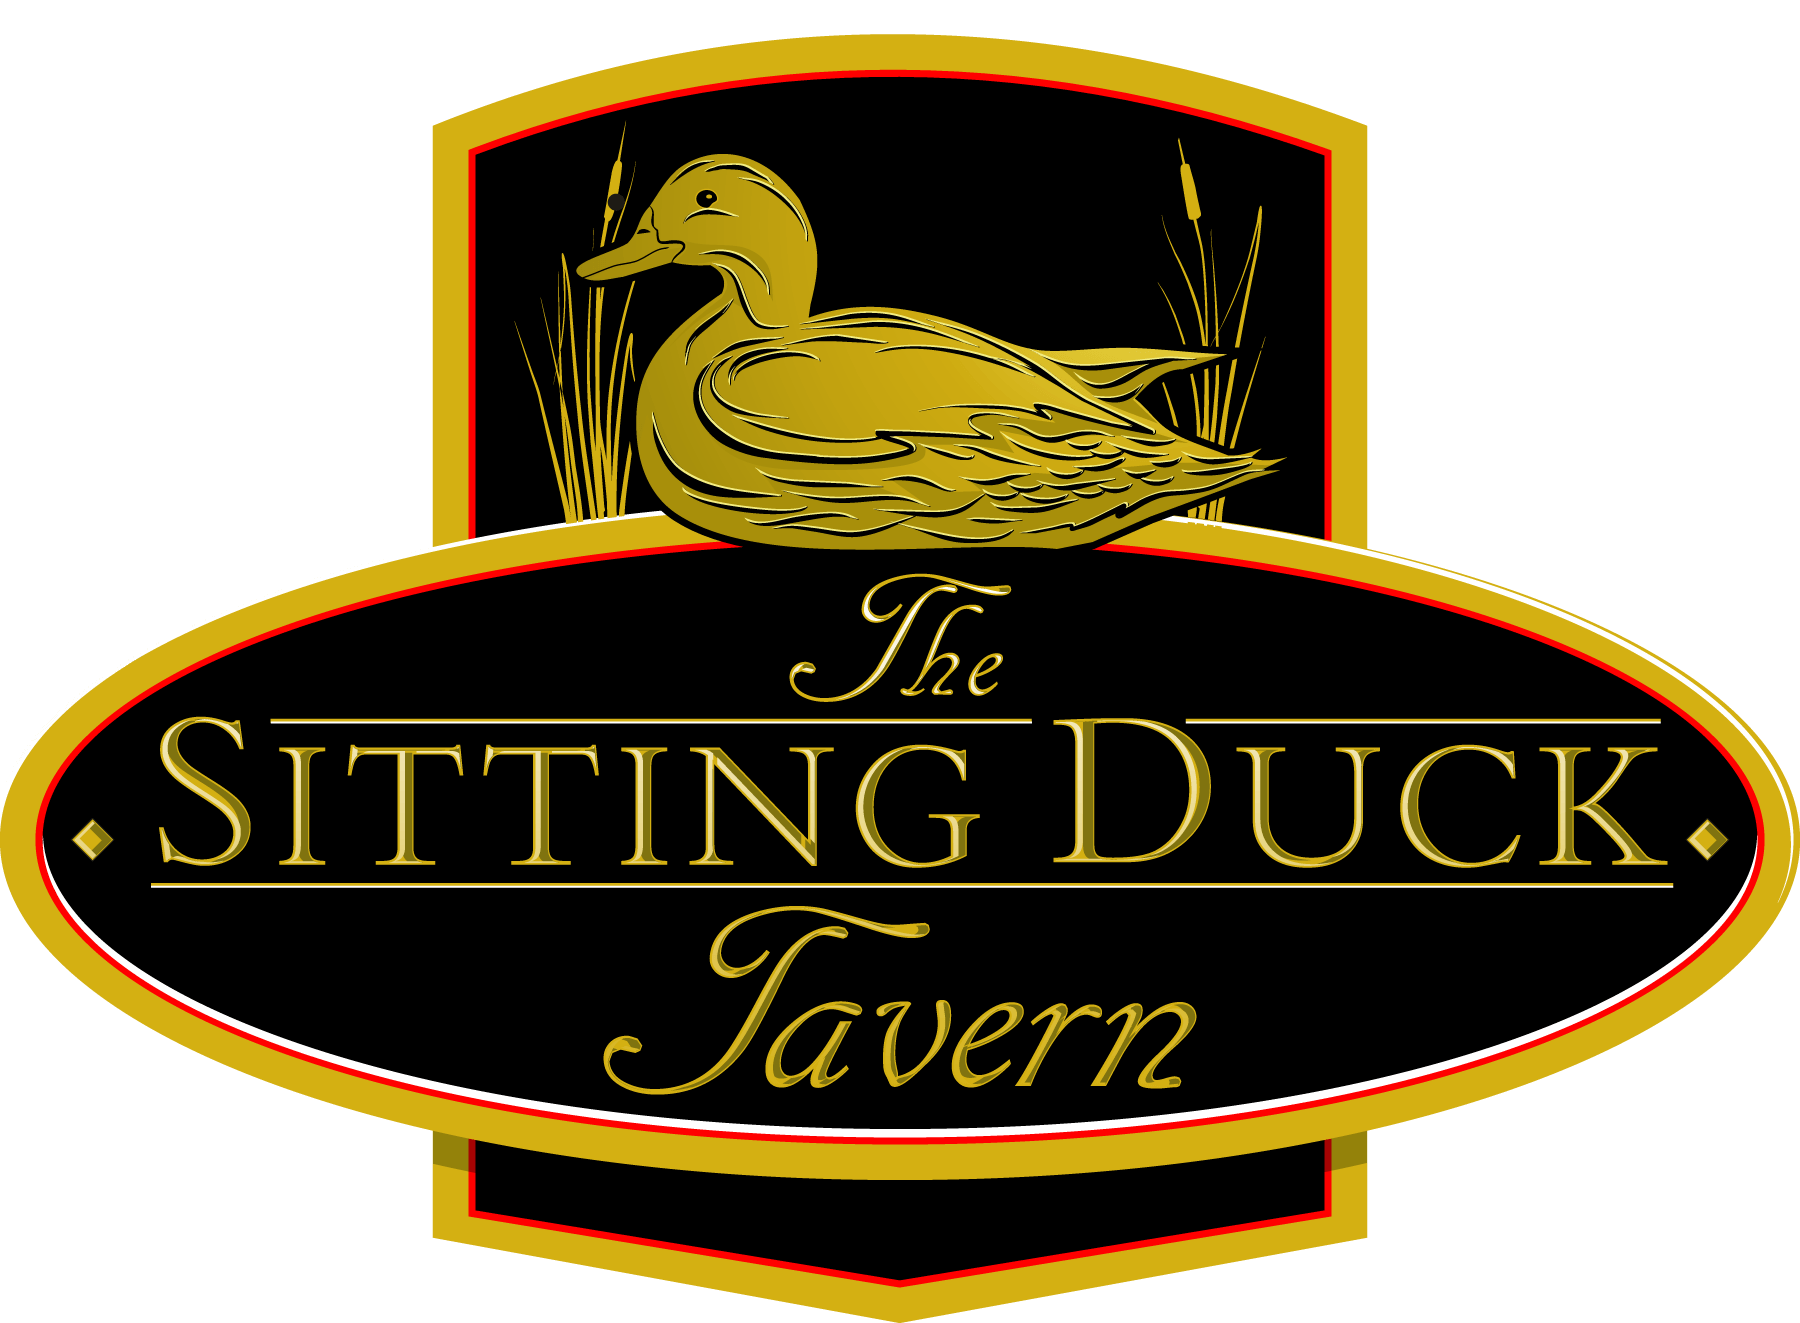 Duck Restaurant Logo - The Sitting Duck Tavern Sitting Duck Tavern